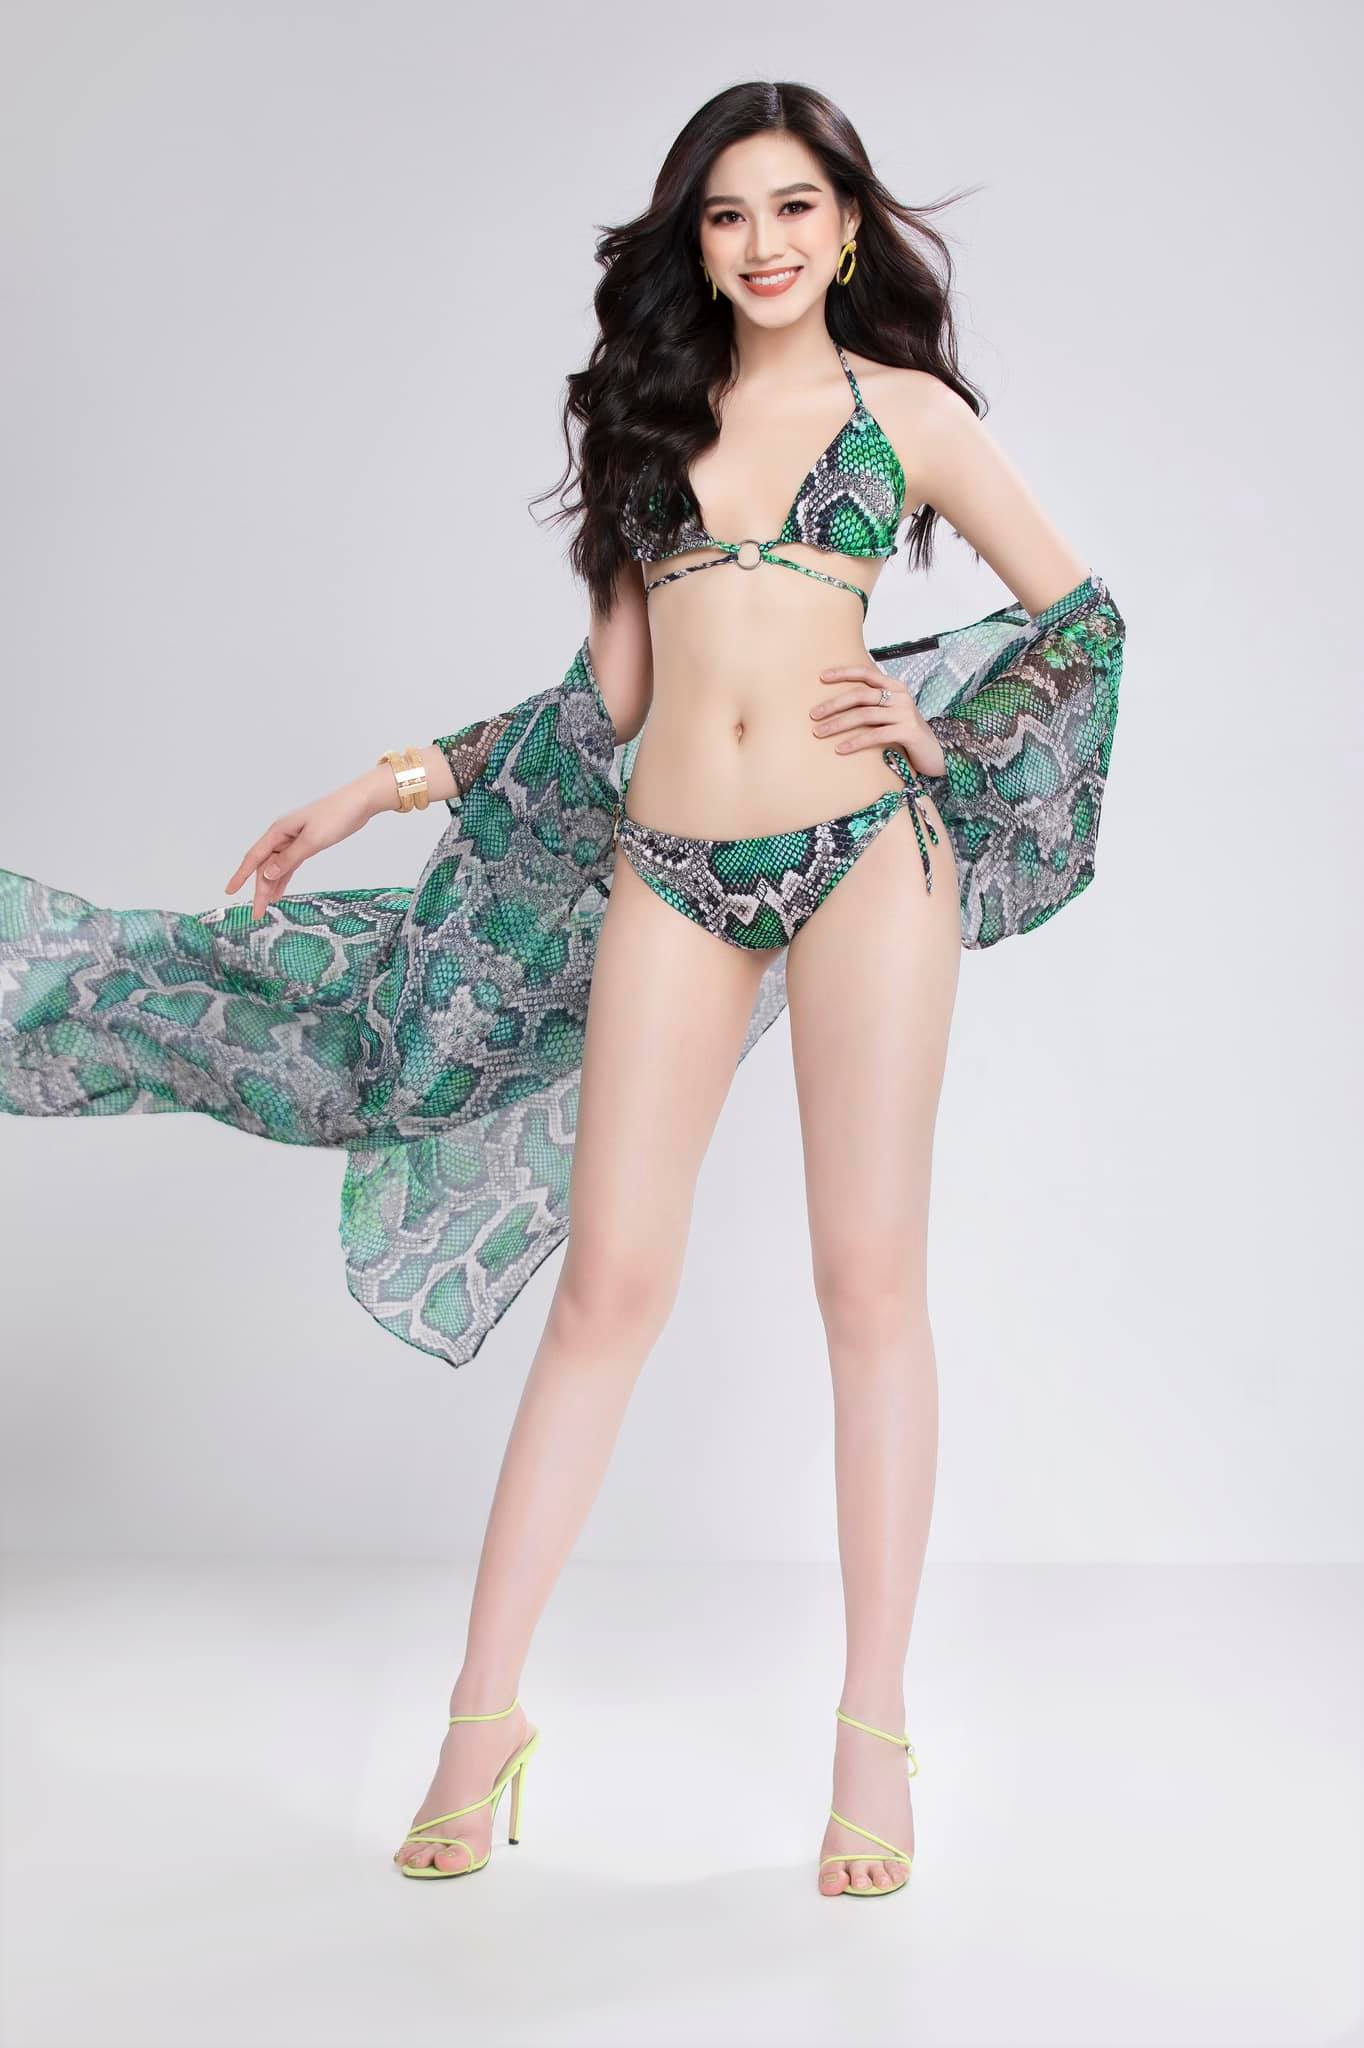 Hoa hậu Đỗ Thị Hà khoe đôi chân dài nuột nà 1m11 trong shoot hình bikini.